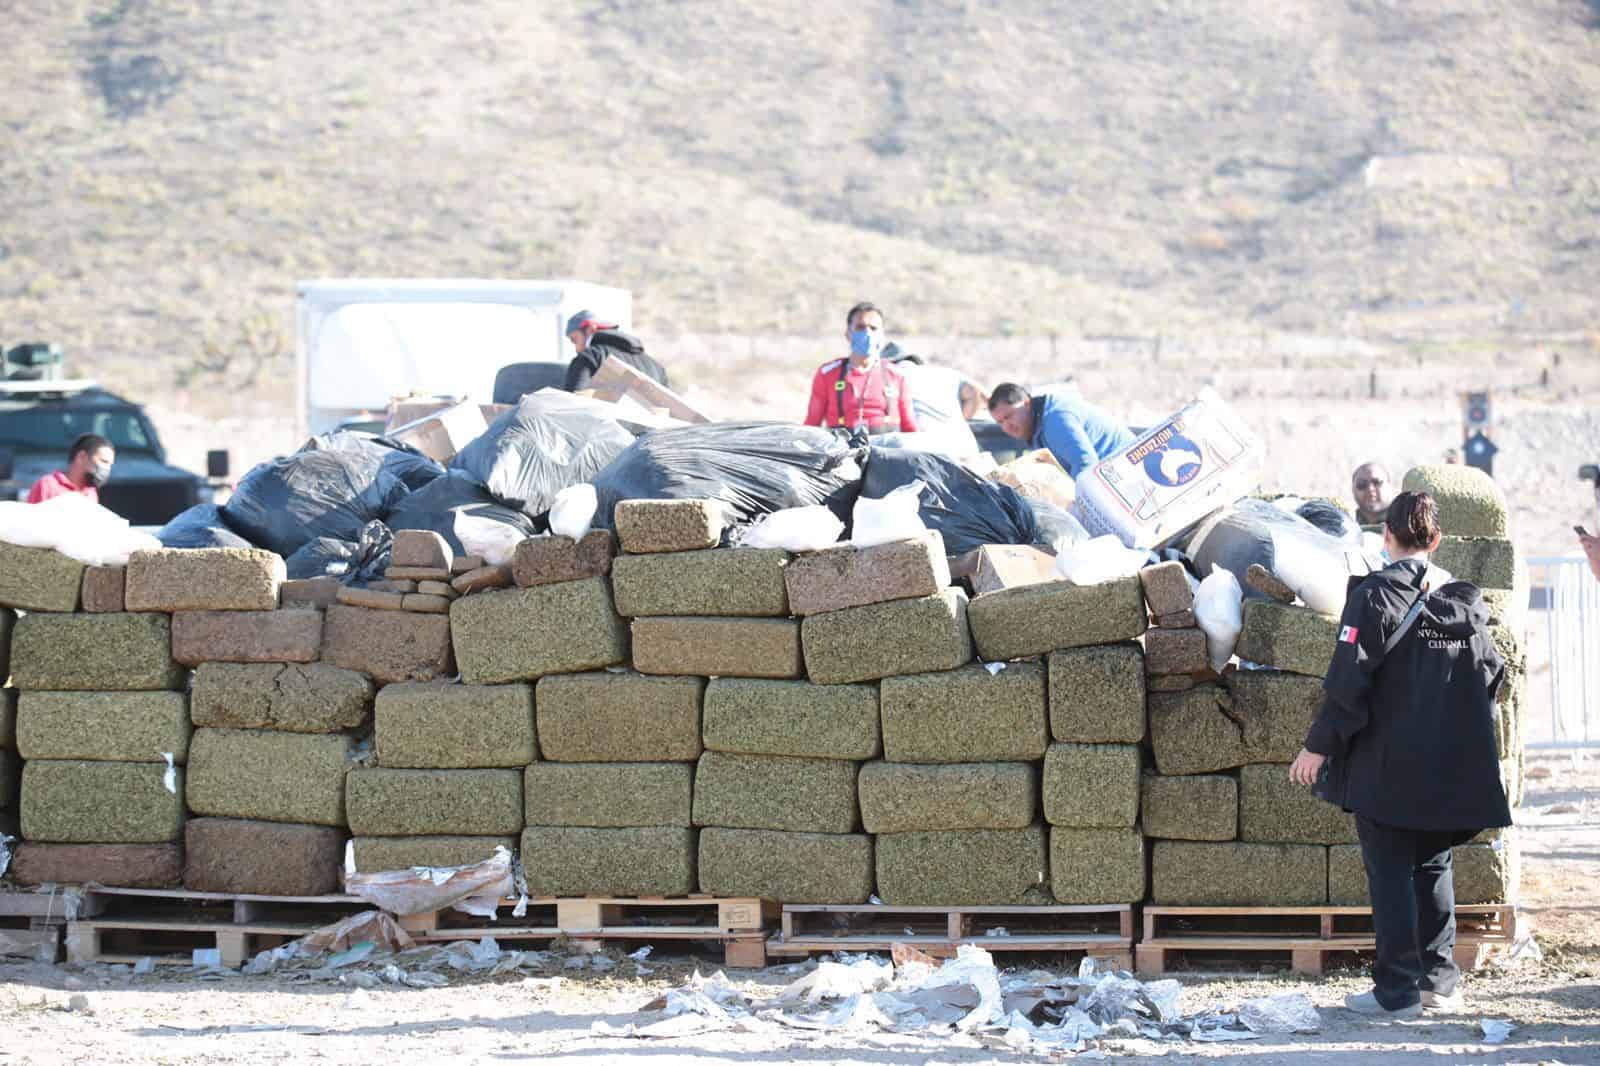 Incineran droga en Coahuila